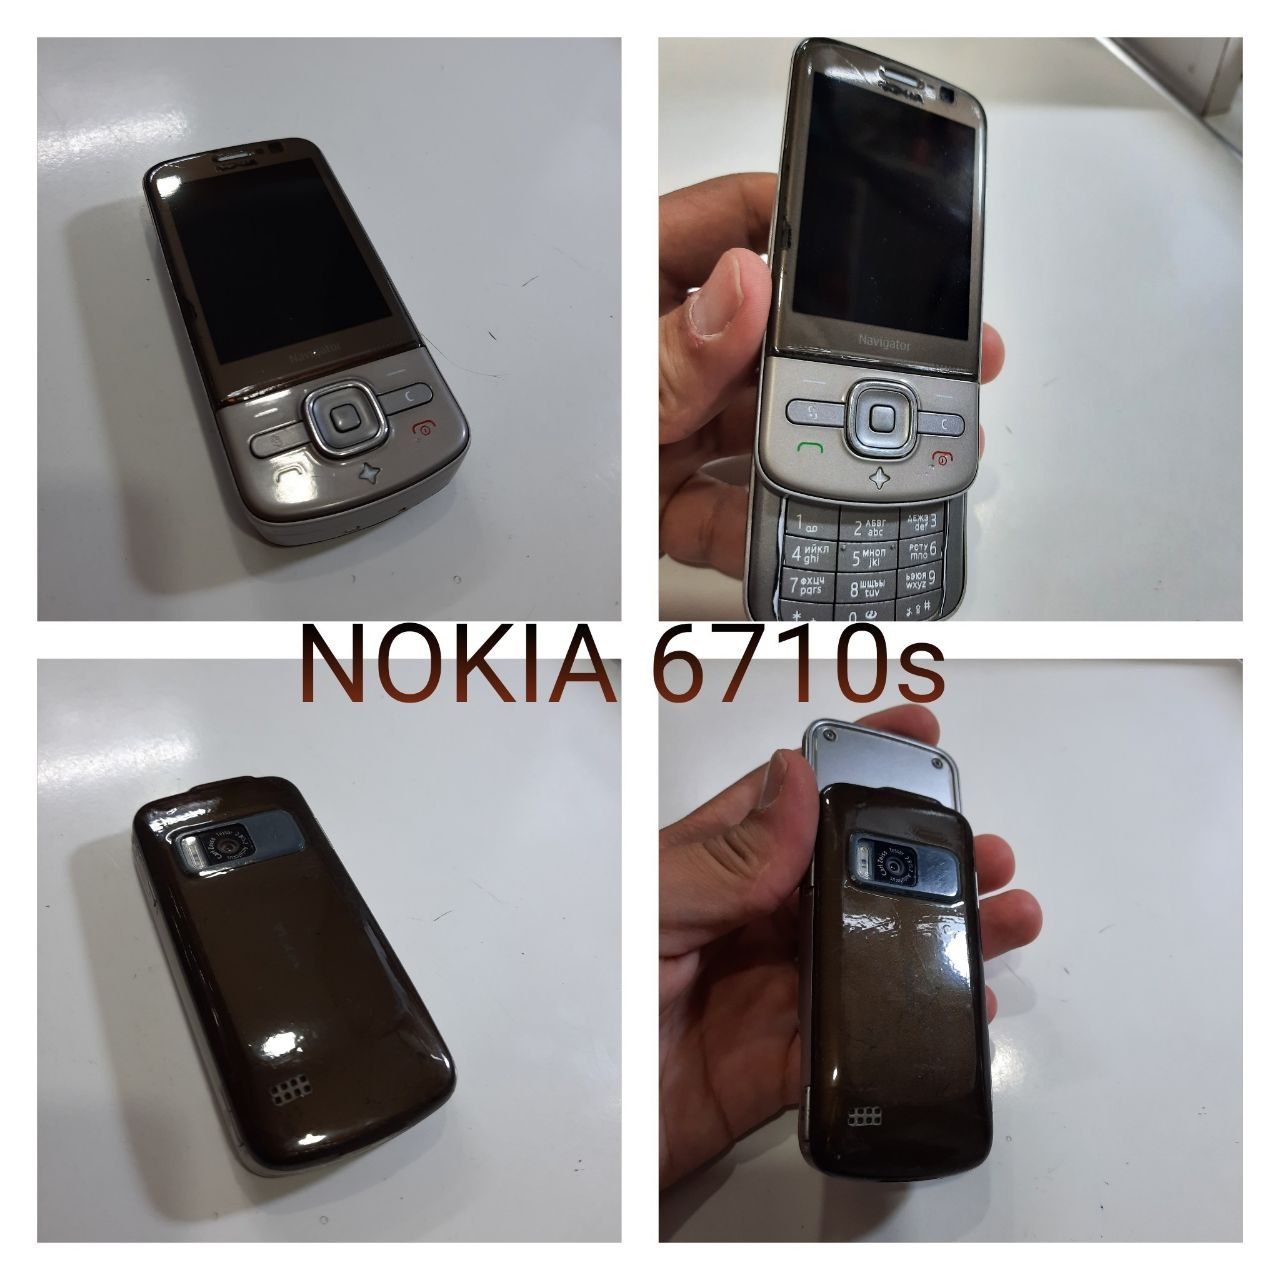 Nokia 6710s sotiladi